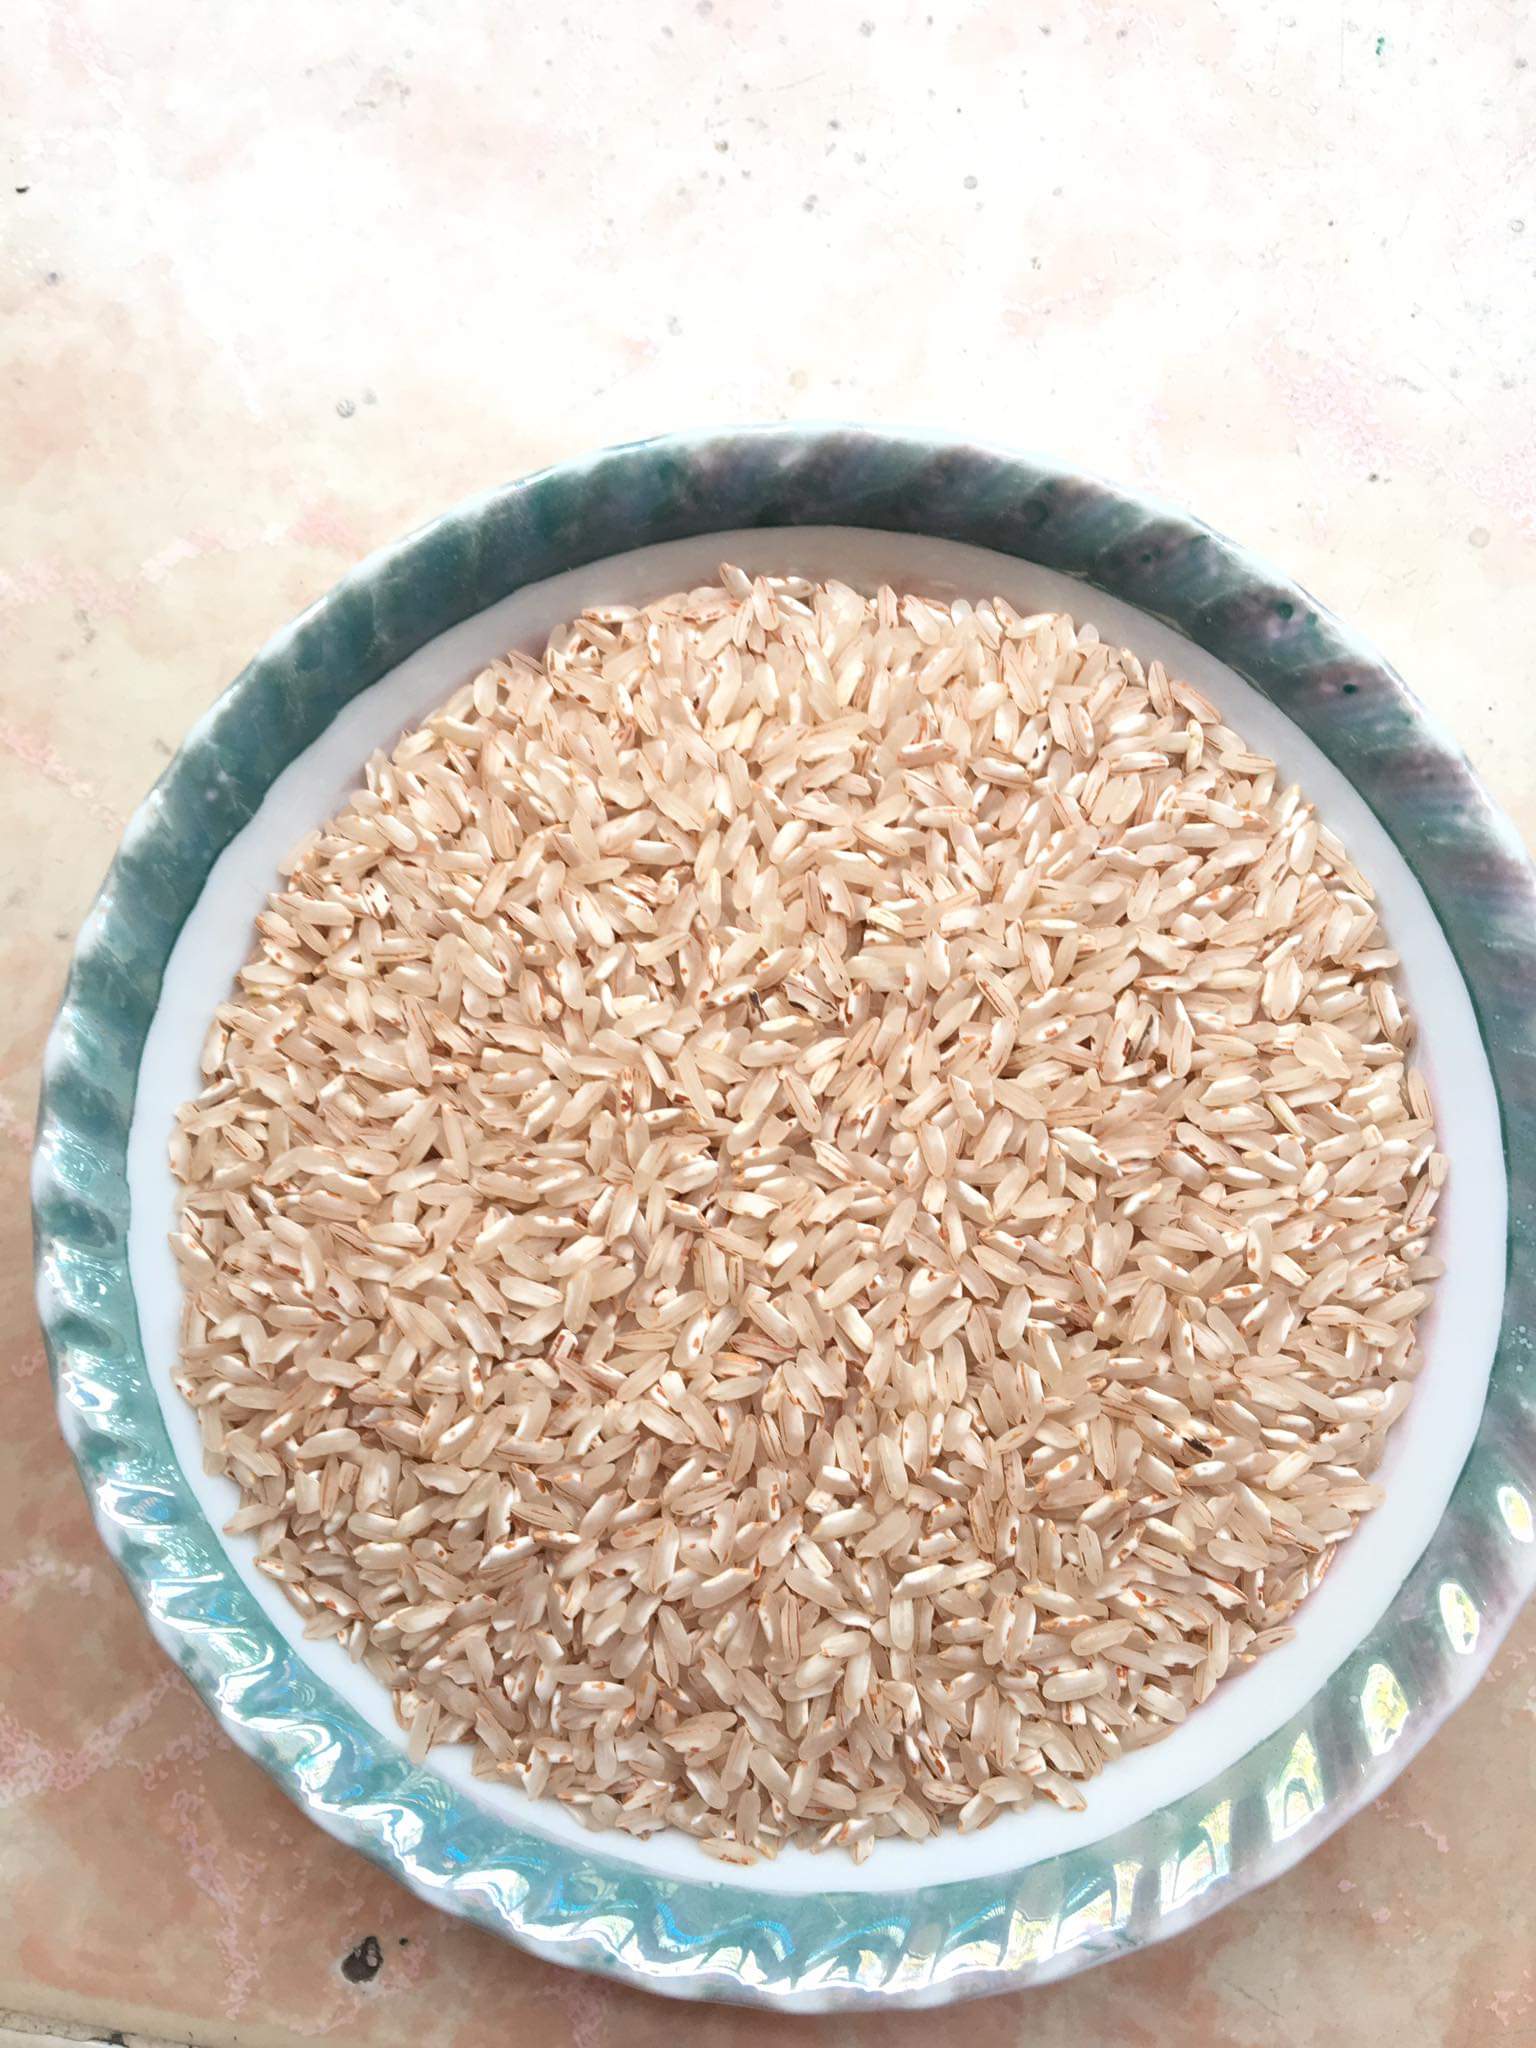 Gạo Huyết Rồng có nguồn gốc từ Trung Quốc và sau đó được du nhập vào Việt Nam. Đây là loại gạo khá đặc biệt với hương vị ngọt ngào và màu sắc hồng đỏ đặc trưng. Hãy thưởng thức và cảm nhận sự khác biệt của loại gạo này.